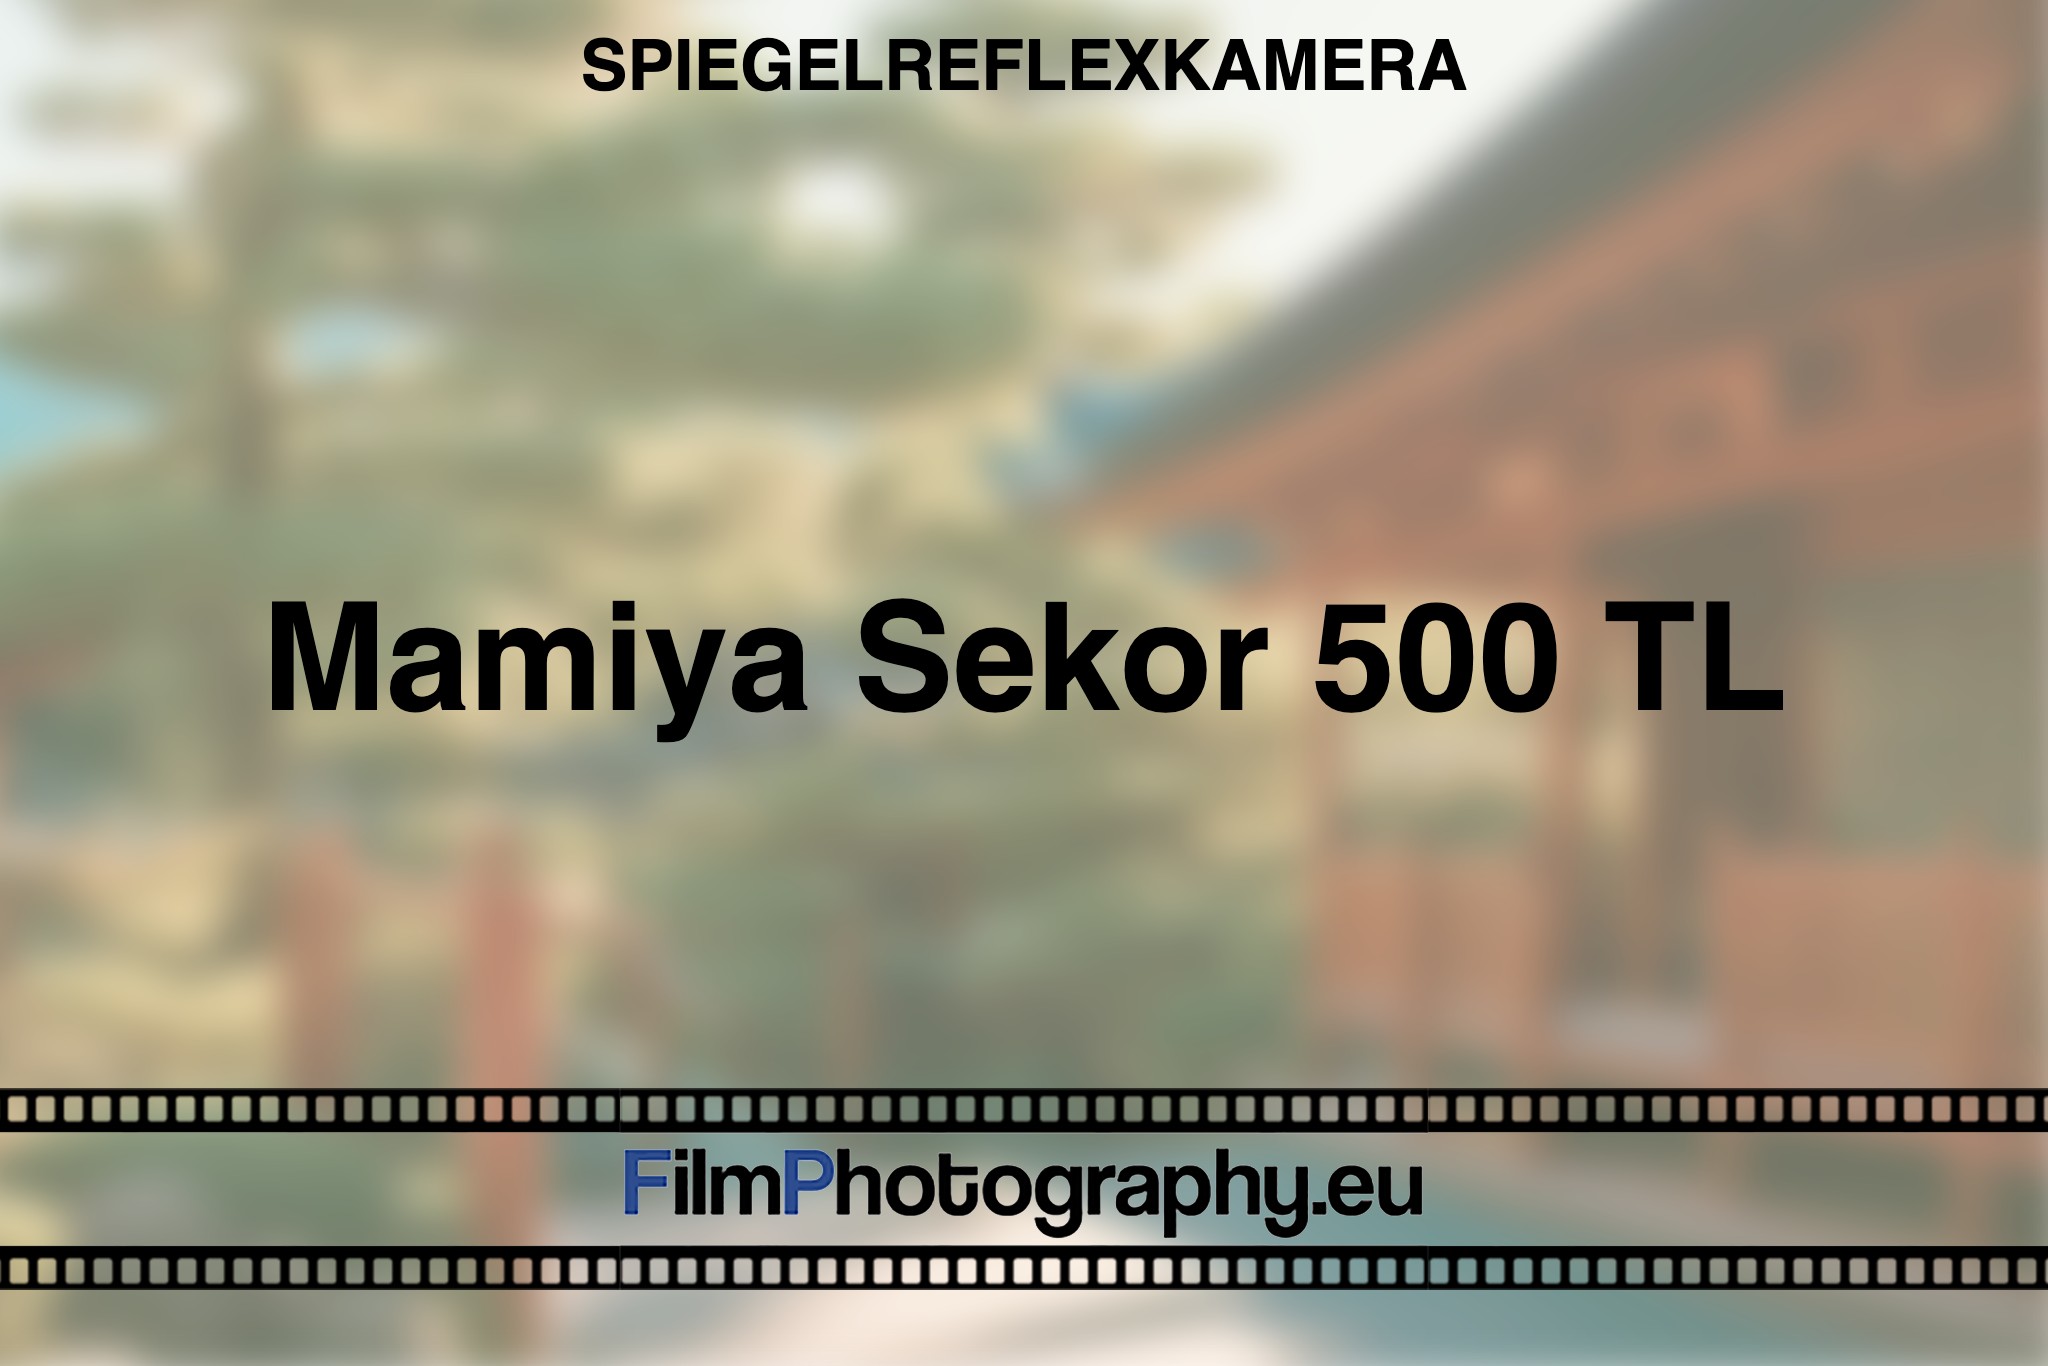 mamiya-sekor-500-tl-spiegelreflexkamera-bnv